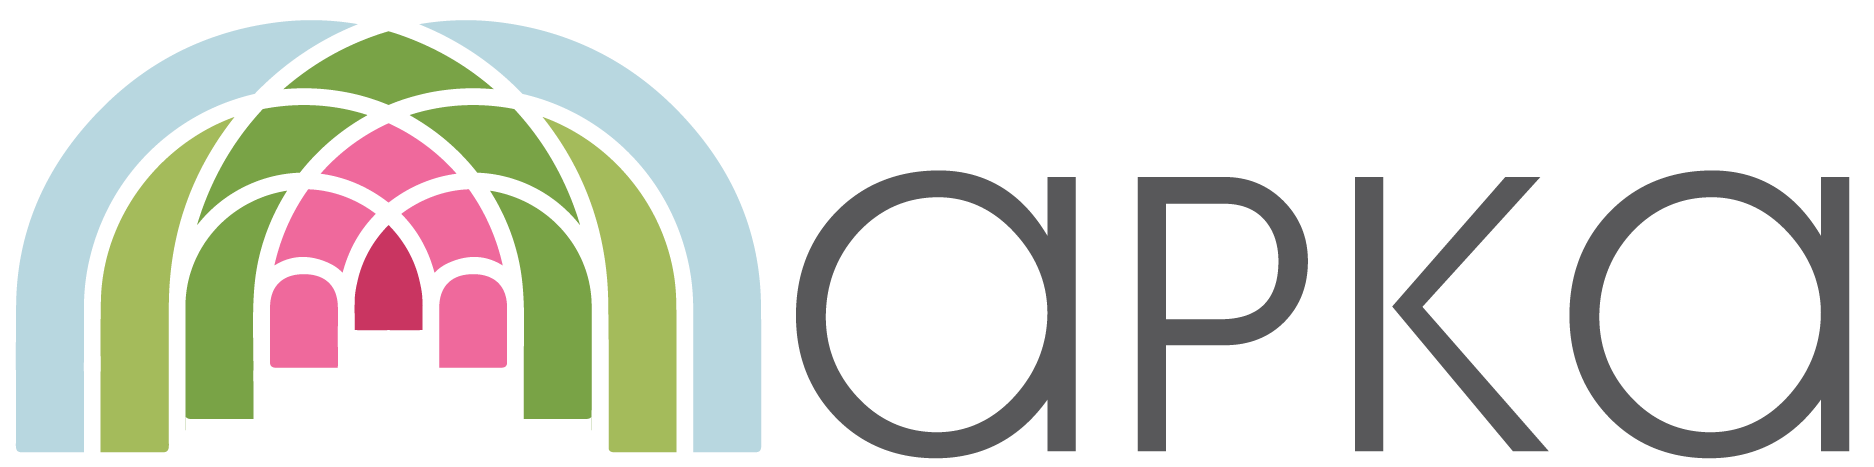 Arka company logotype